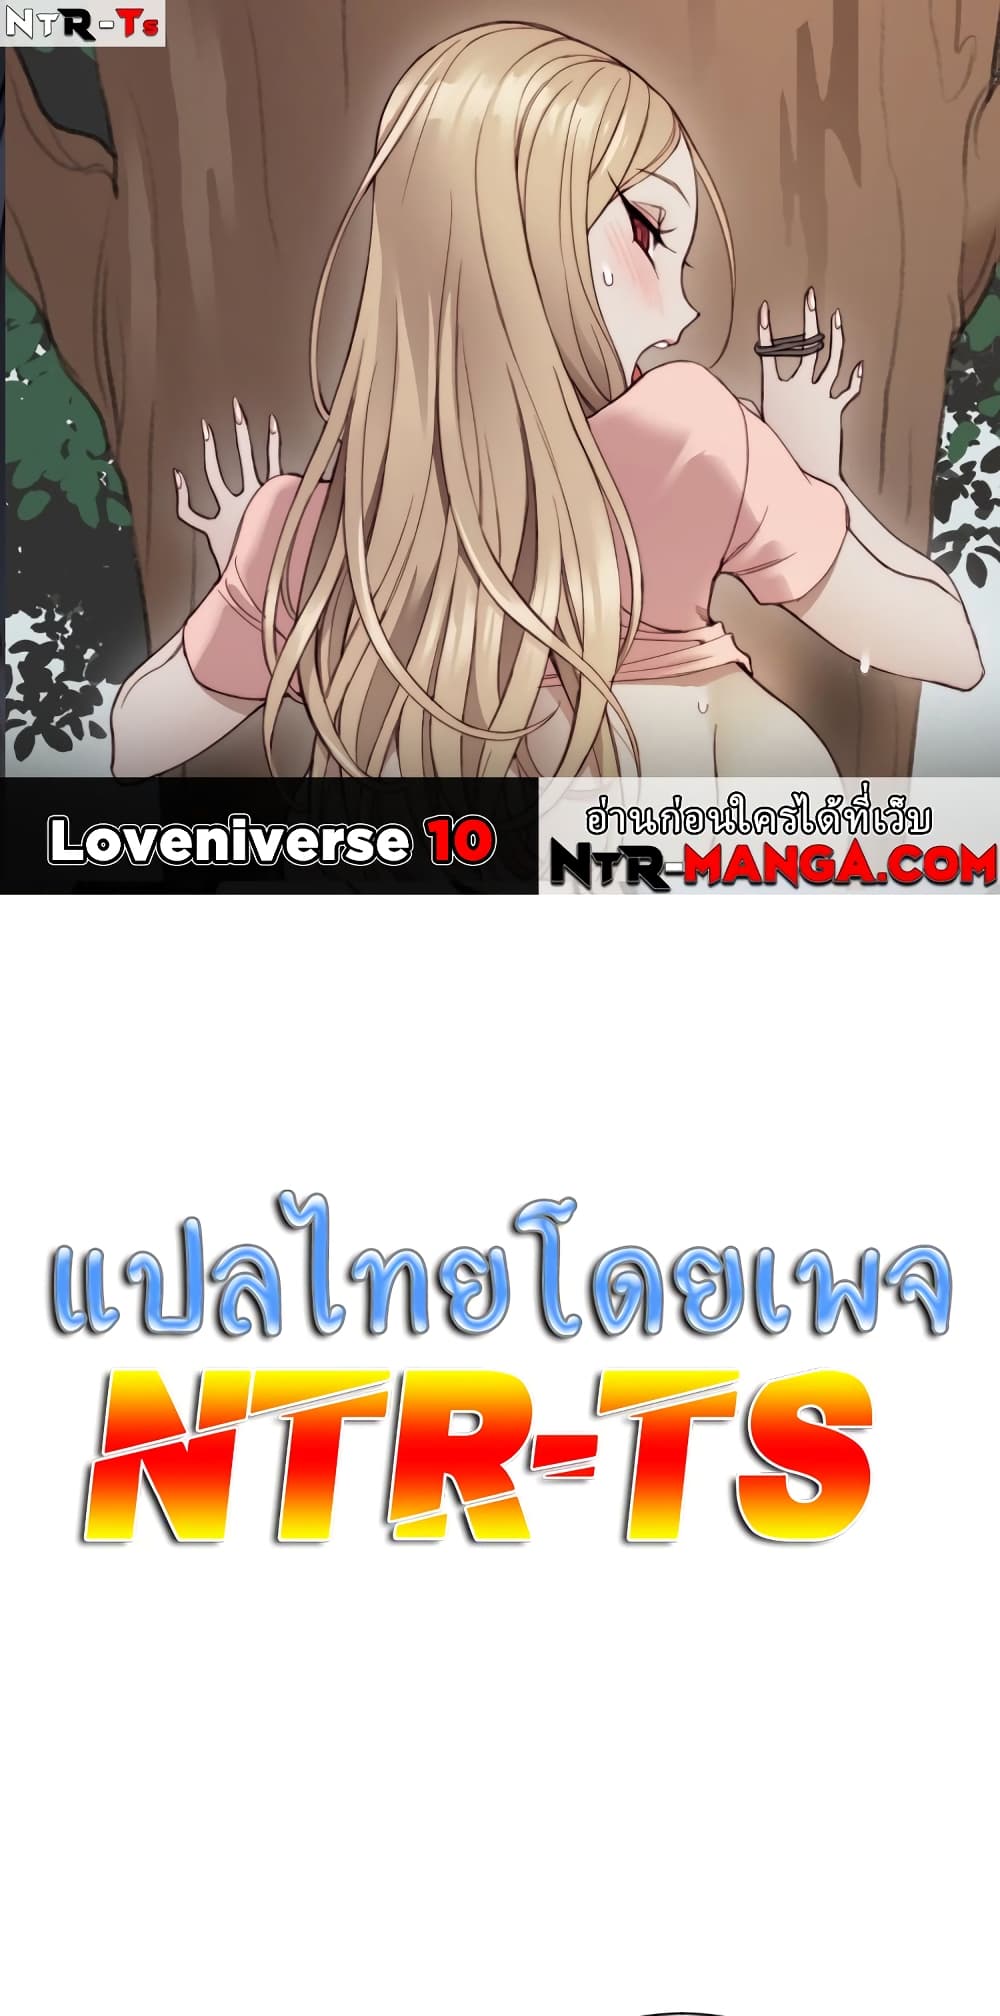 Loveniverse 10-10